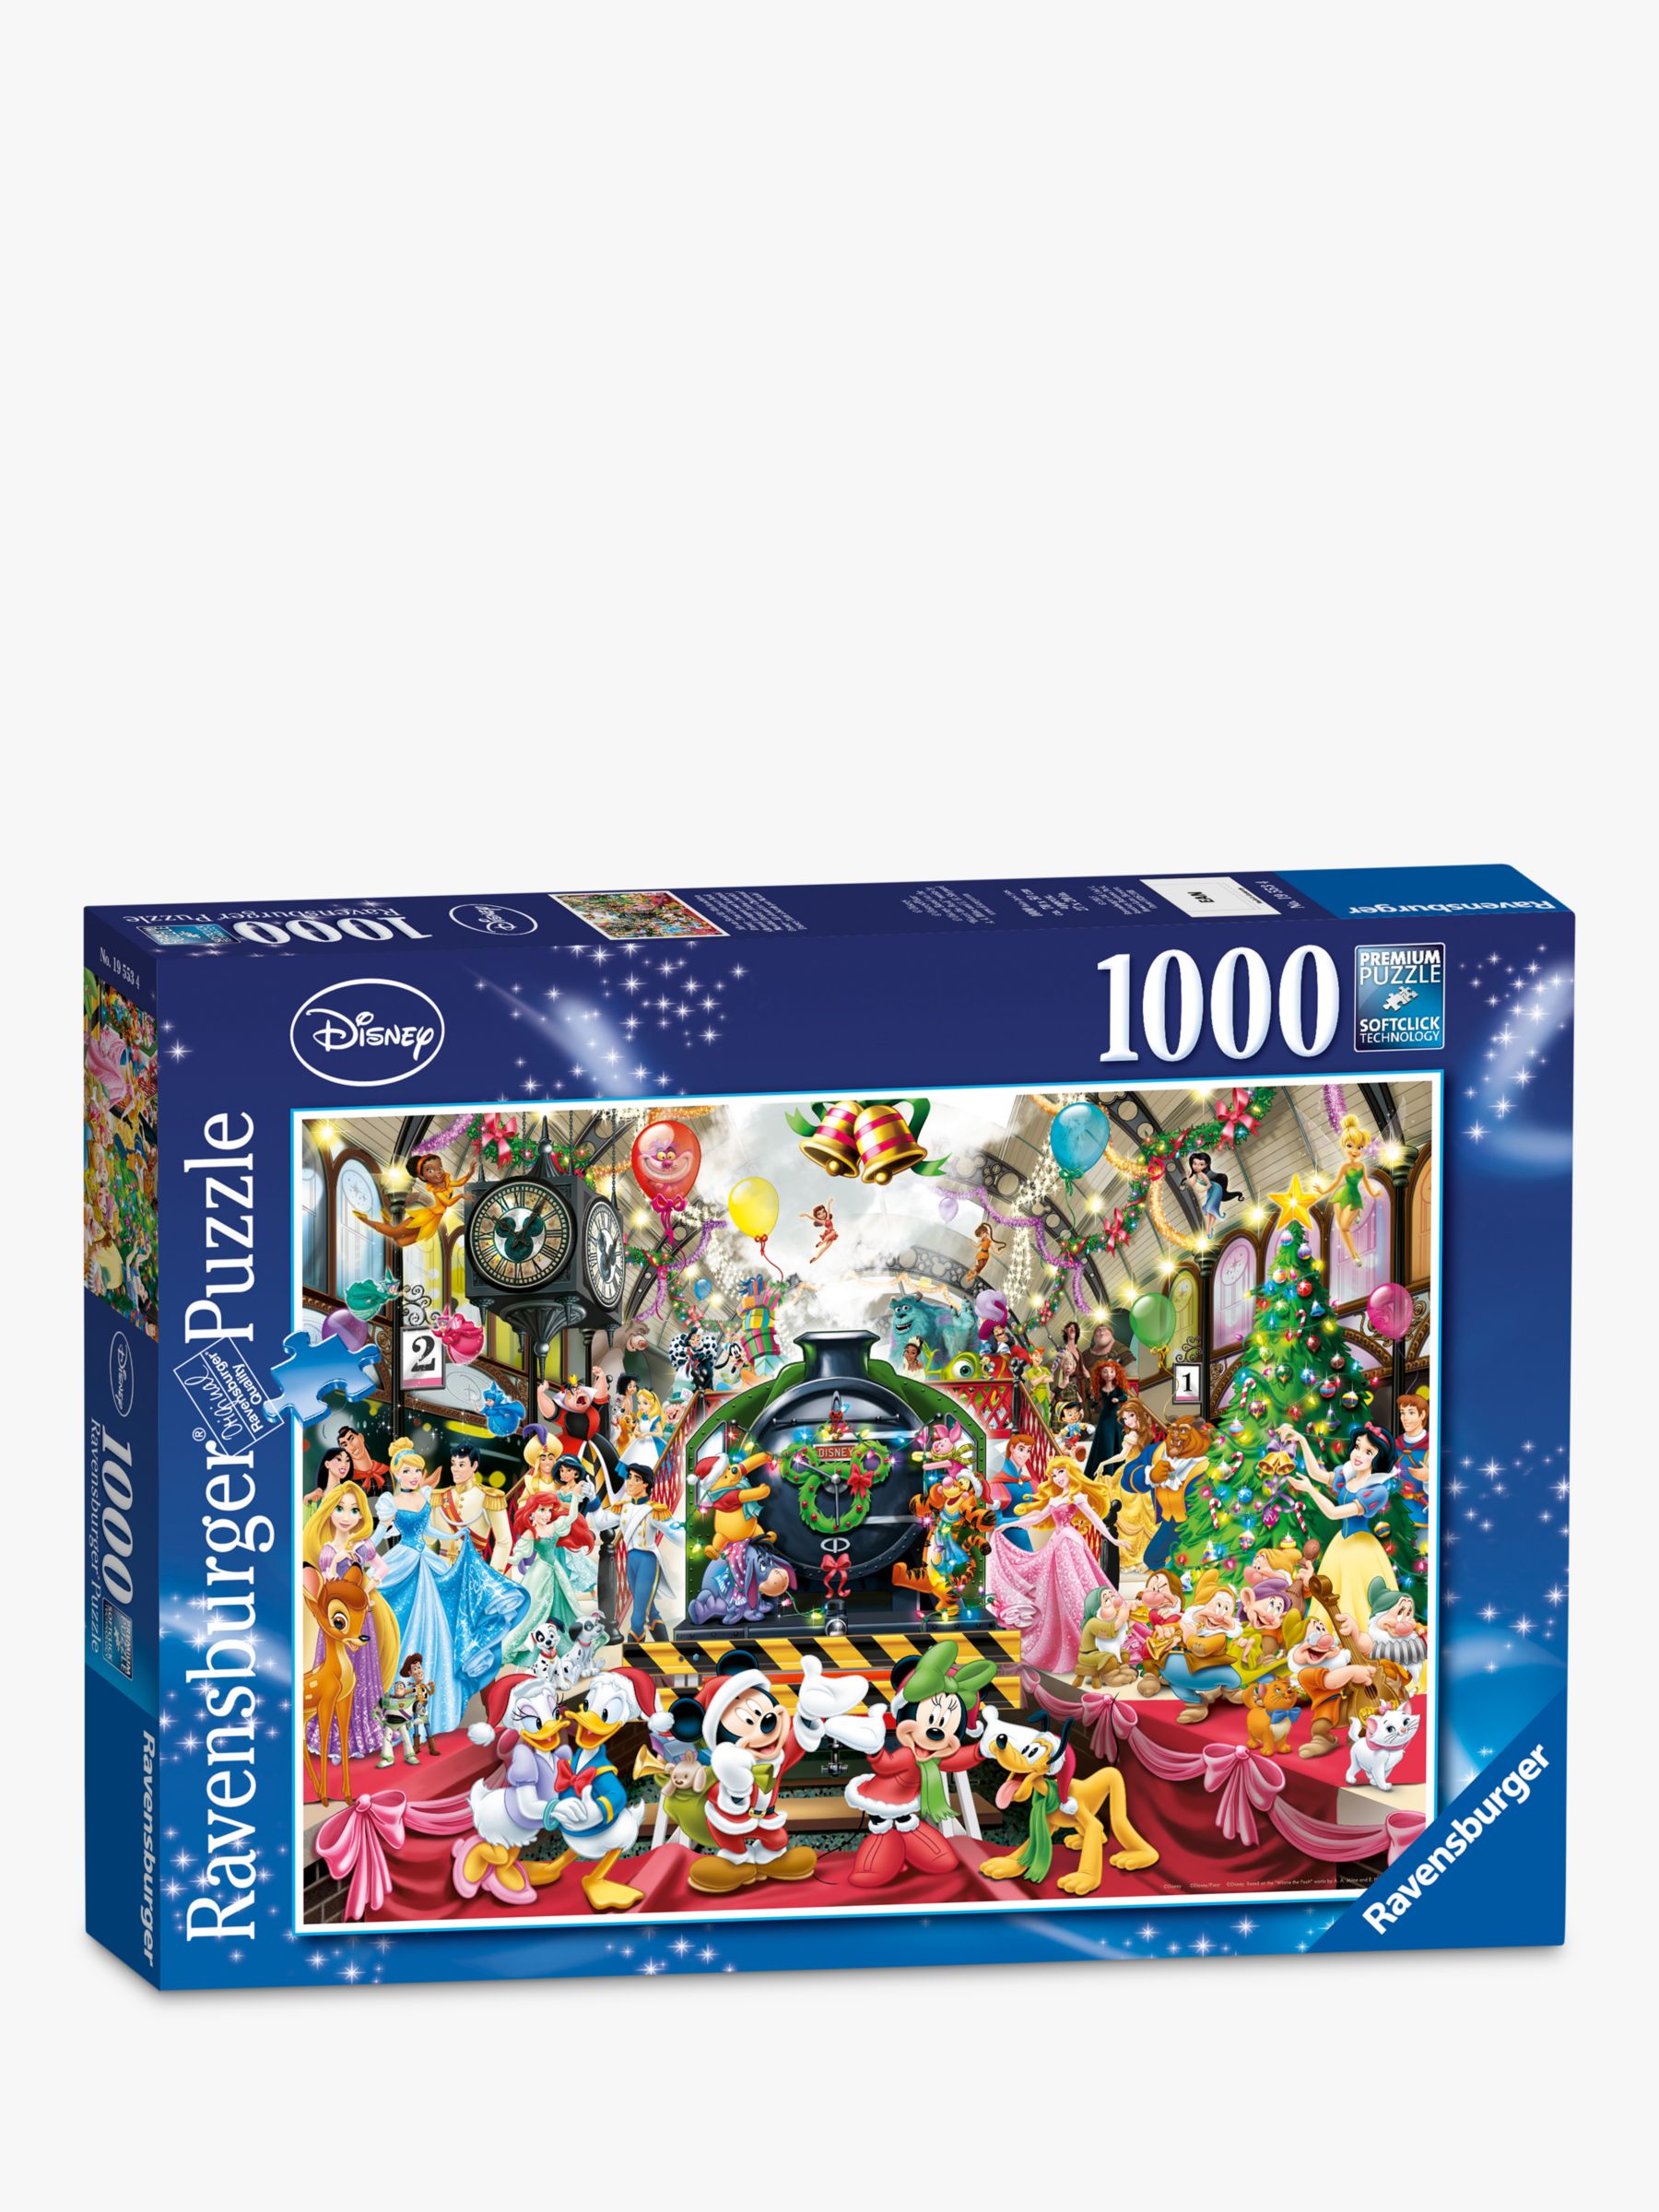 Ravensburger (14739) - Disney, Christmas Train - 500 pieces puzzle